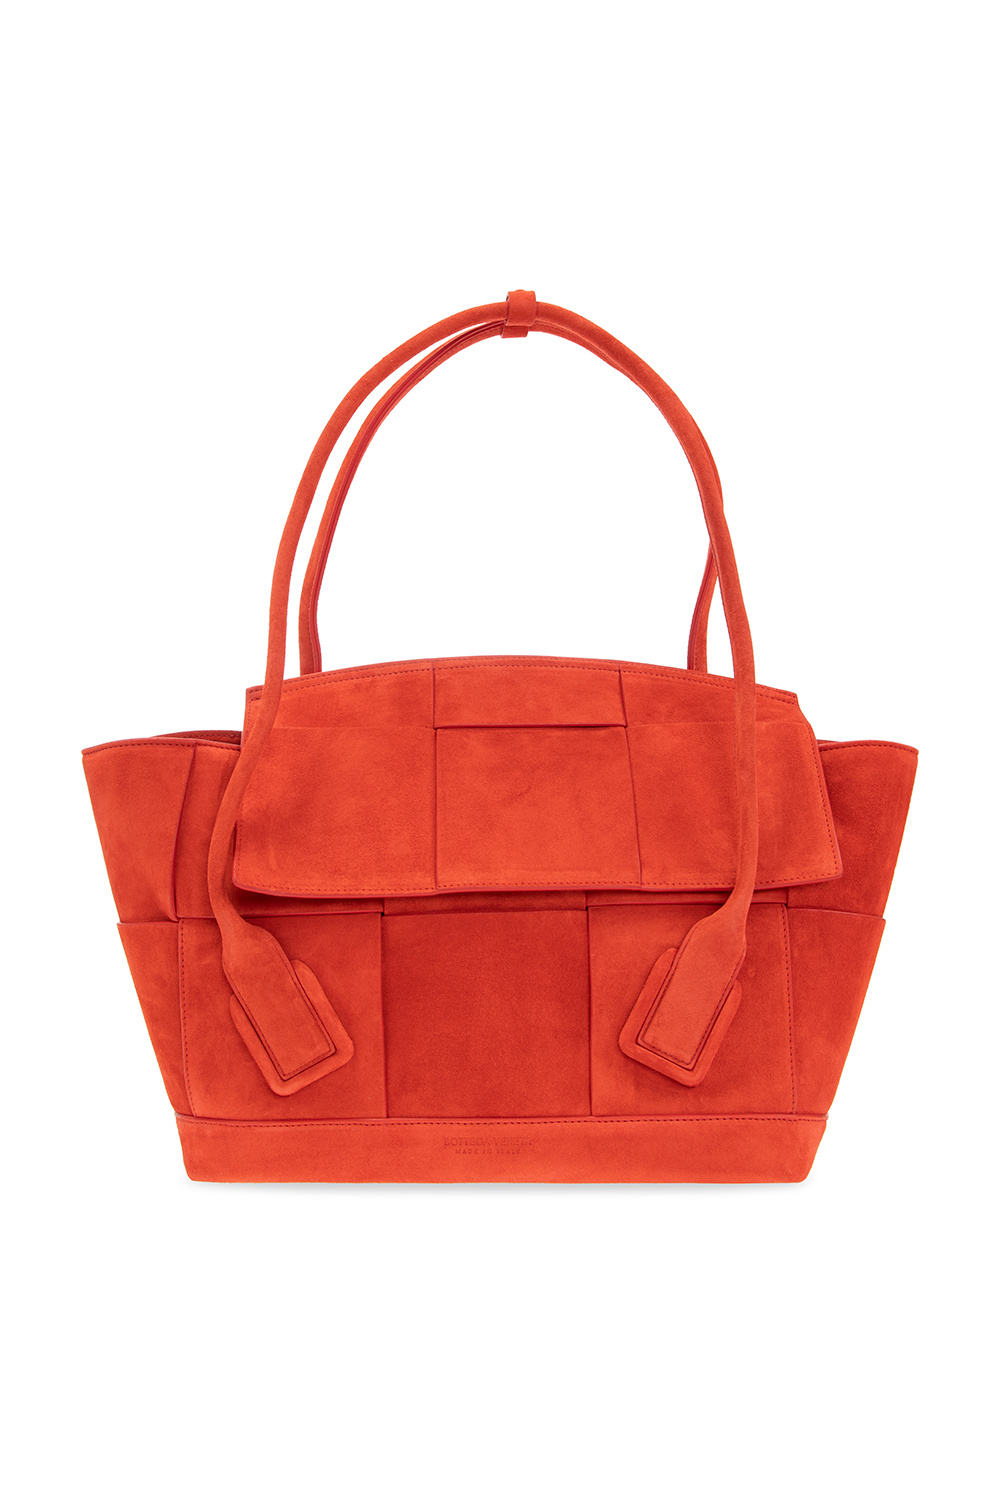 Bottega Veneta ‘Arco’ handbag